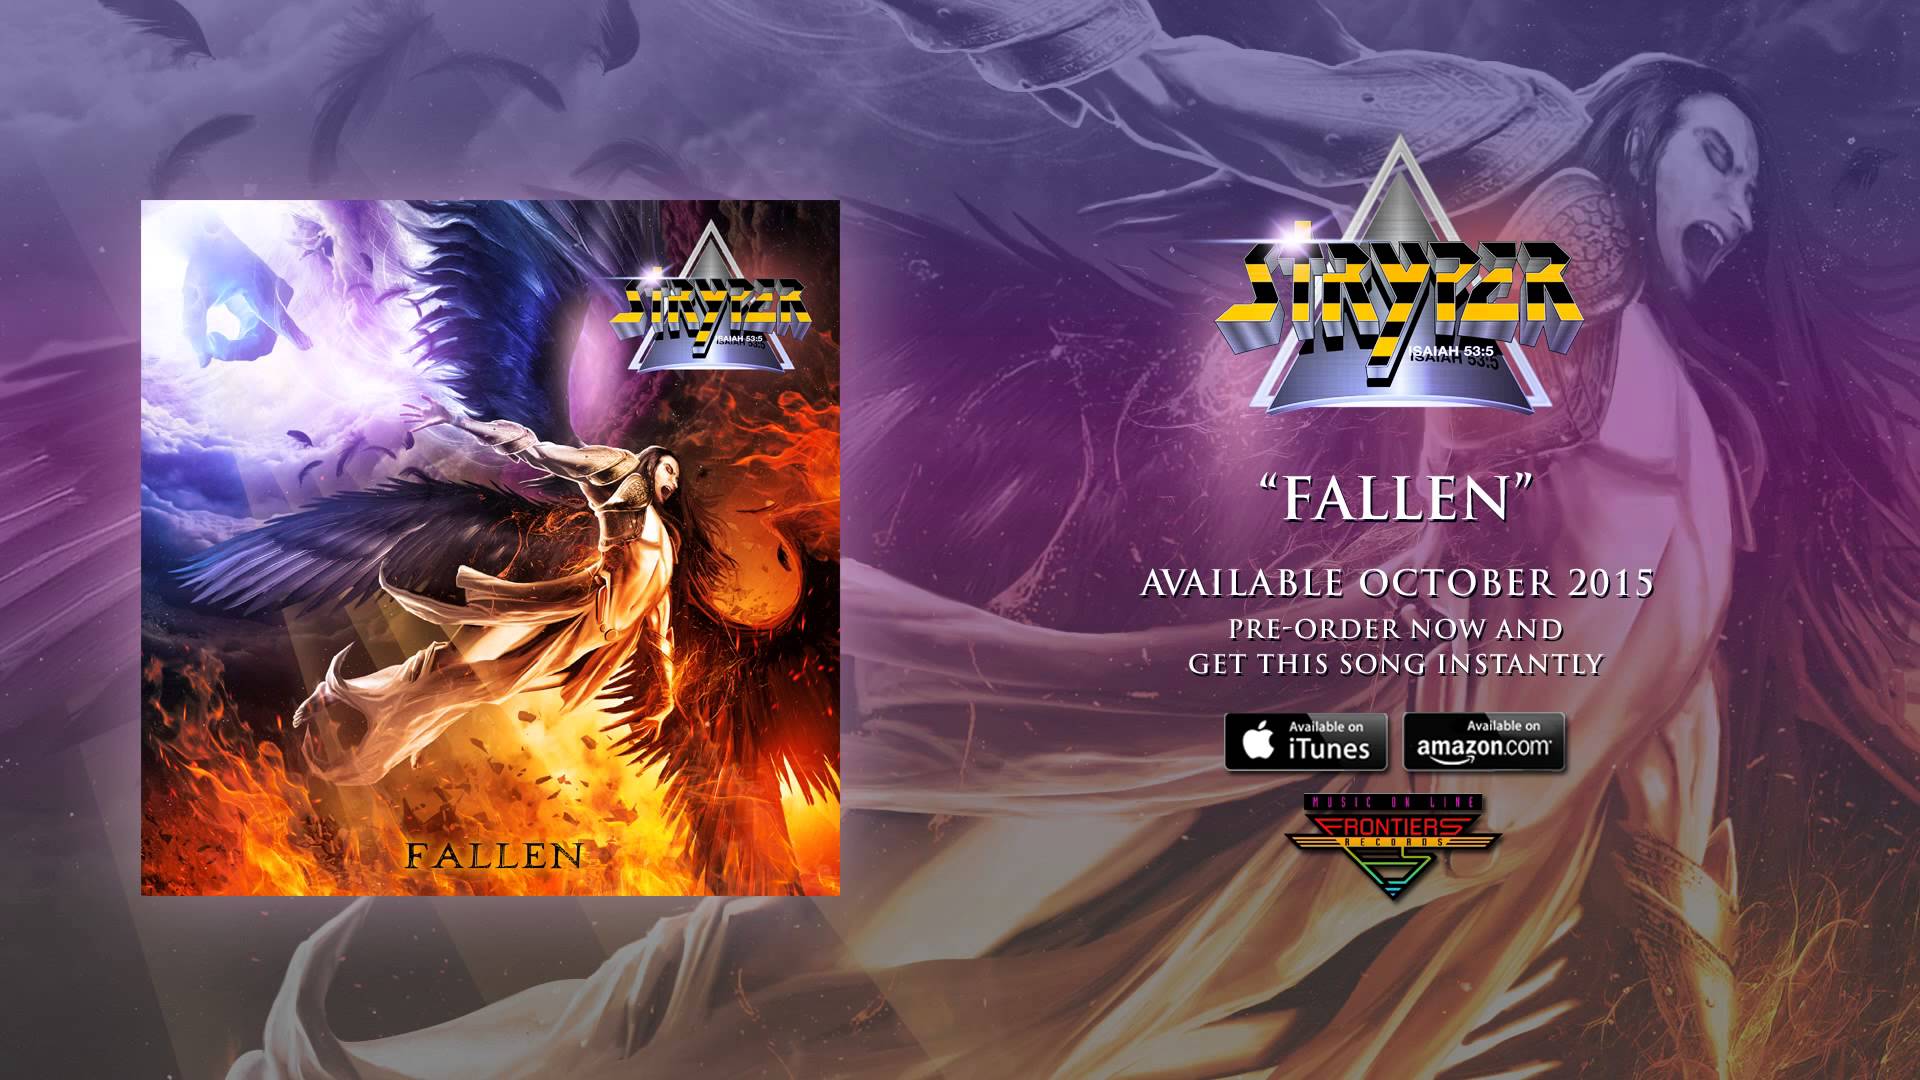 Stryper – Legendary Christian Hard Rockers Return with Fallen!